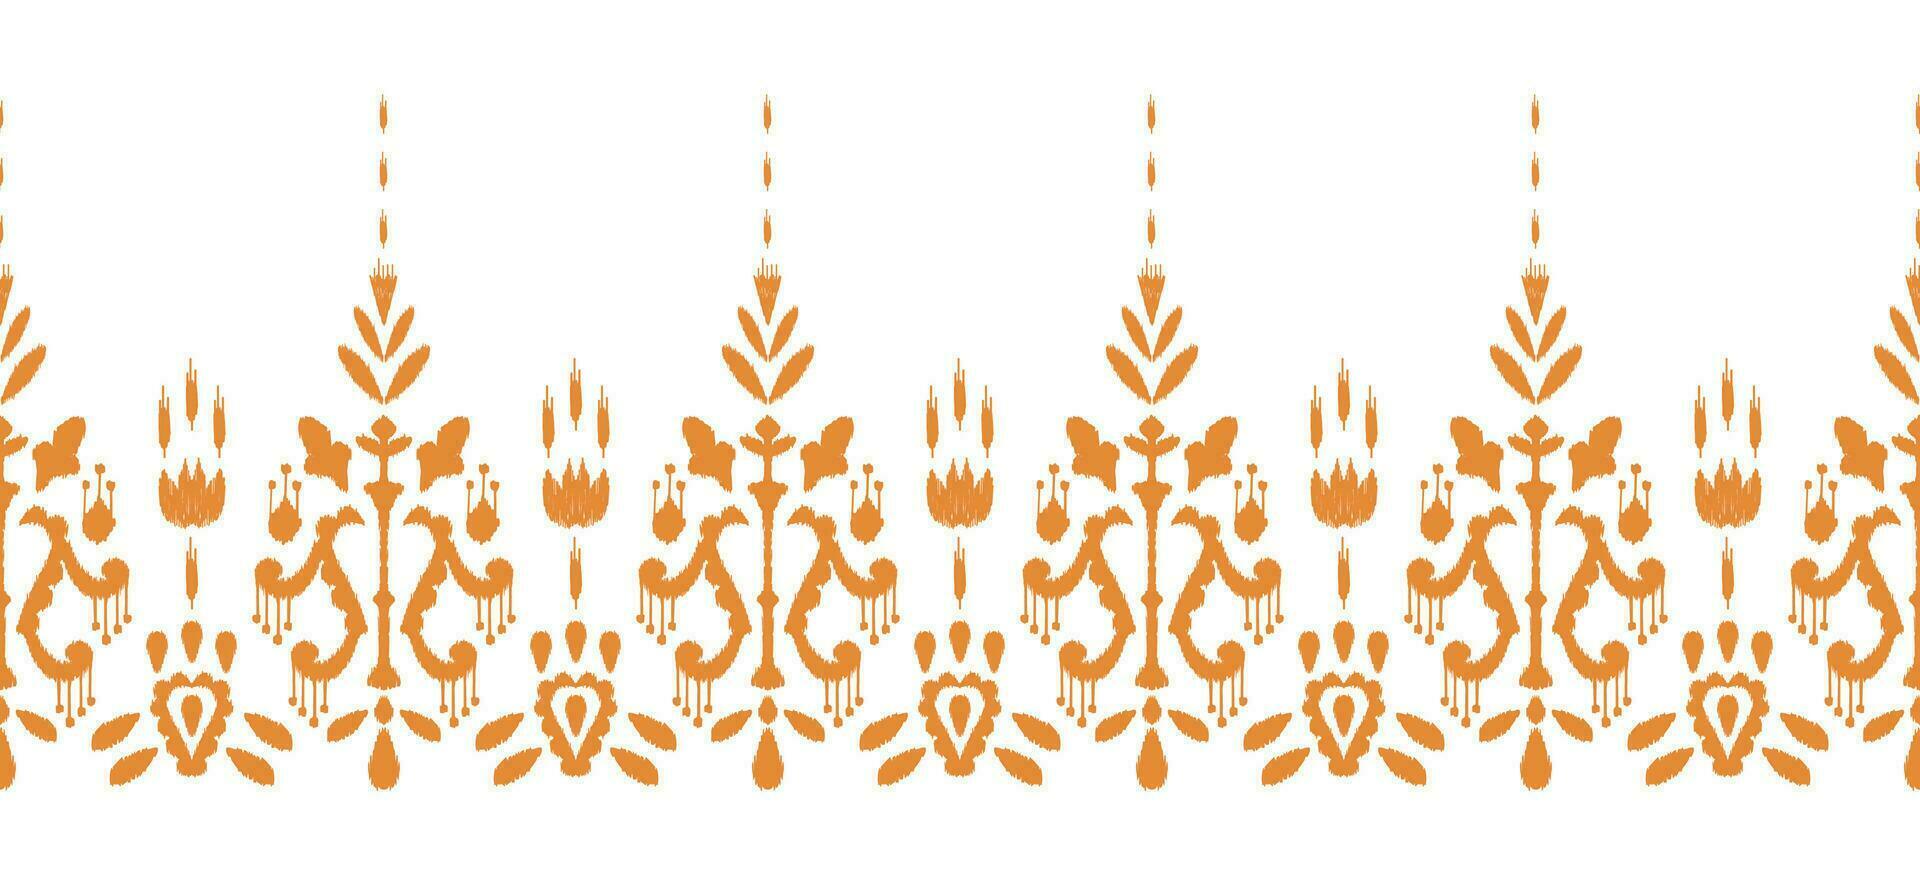 motivo étnico hecho a mano hermosa ikat Arte. étnico resumen floral naranja antecedentes Arte. gente bordado, peruano, indio, Asia, marroquí, pavo, y uzbeko estilo. azteca geométrico Arte ornamento impresión. vector